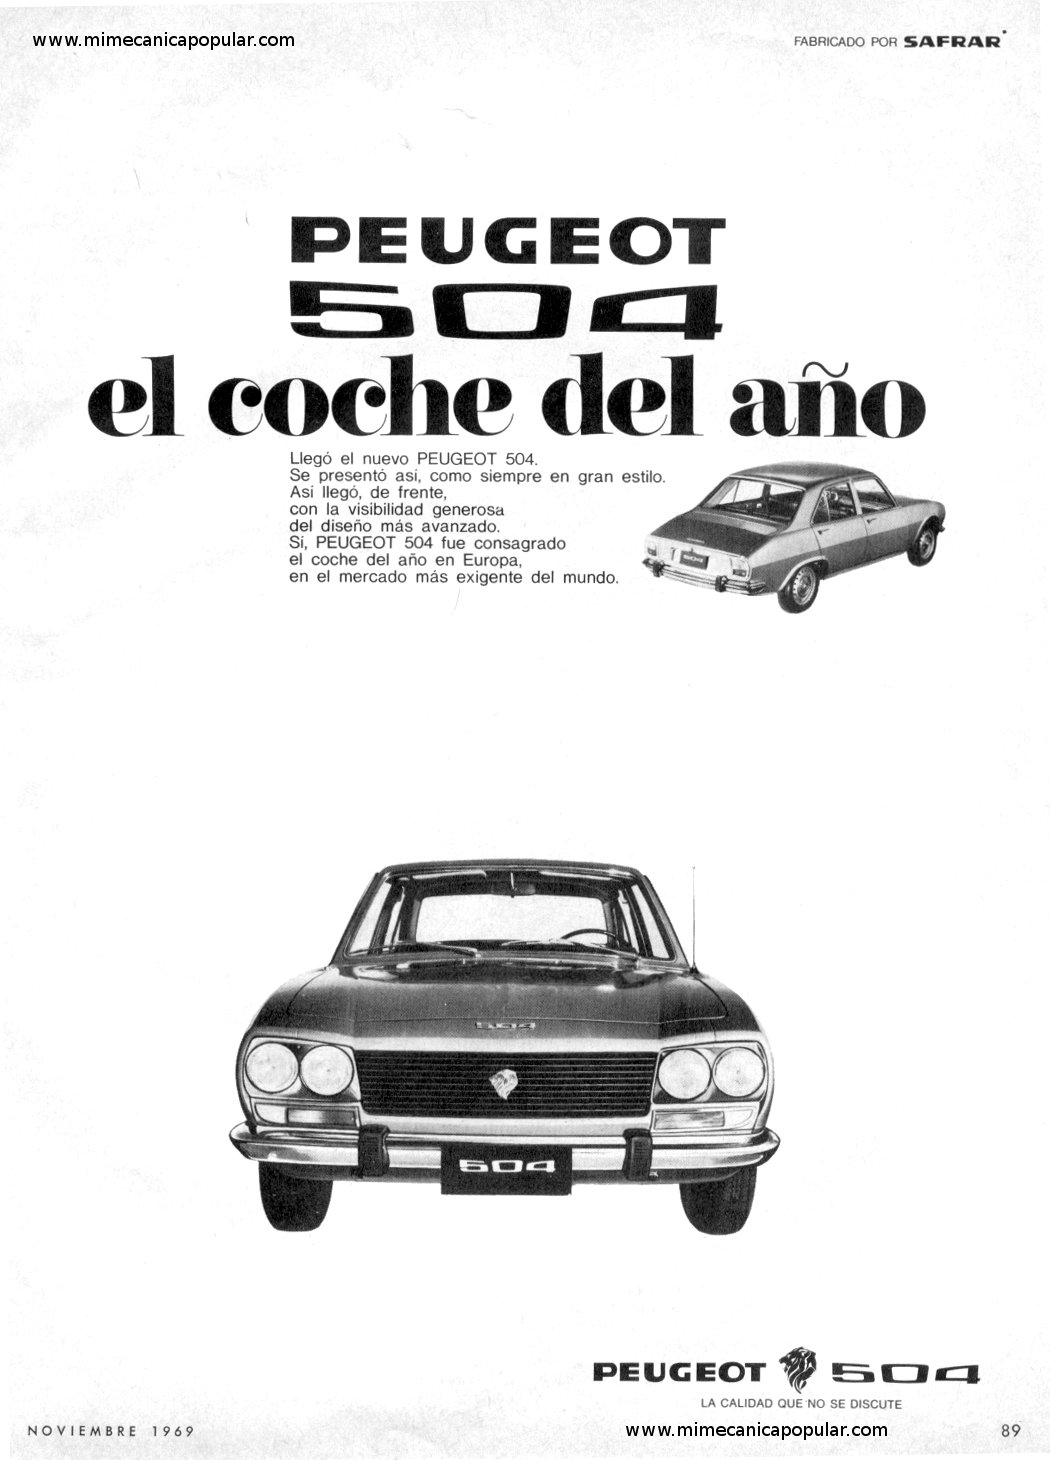 Publicidad - Peugeot 504 - Noviembre 1969